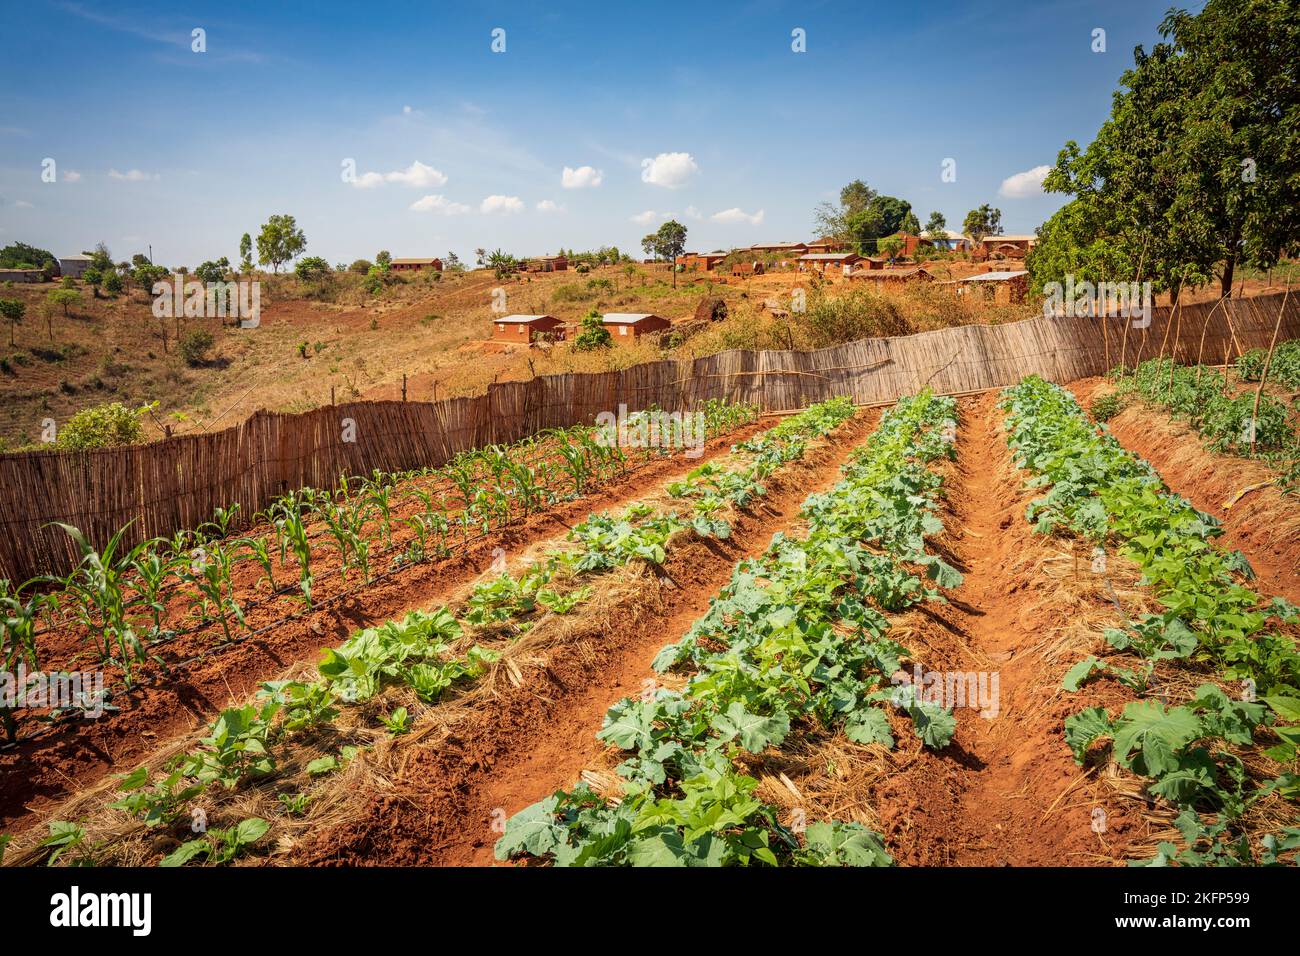 Irrigation goutte à goutte des légumes verts dans un champ du district de la baie de Nkhata, au Malawi Banque D'Images